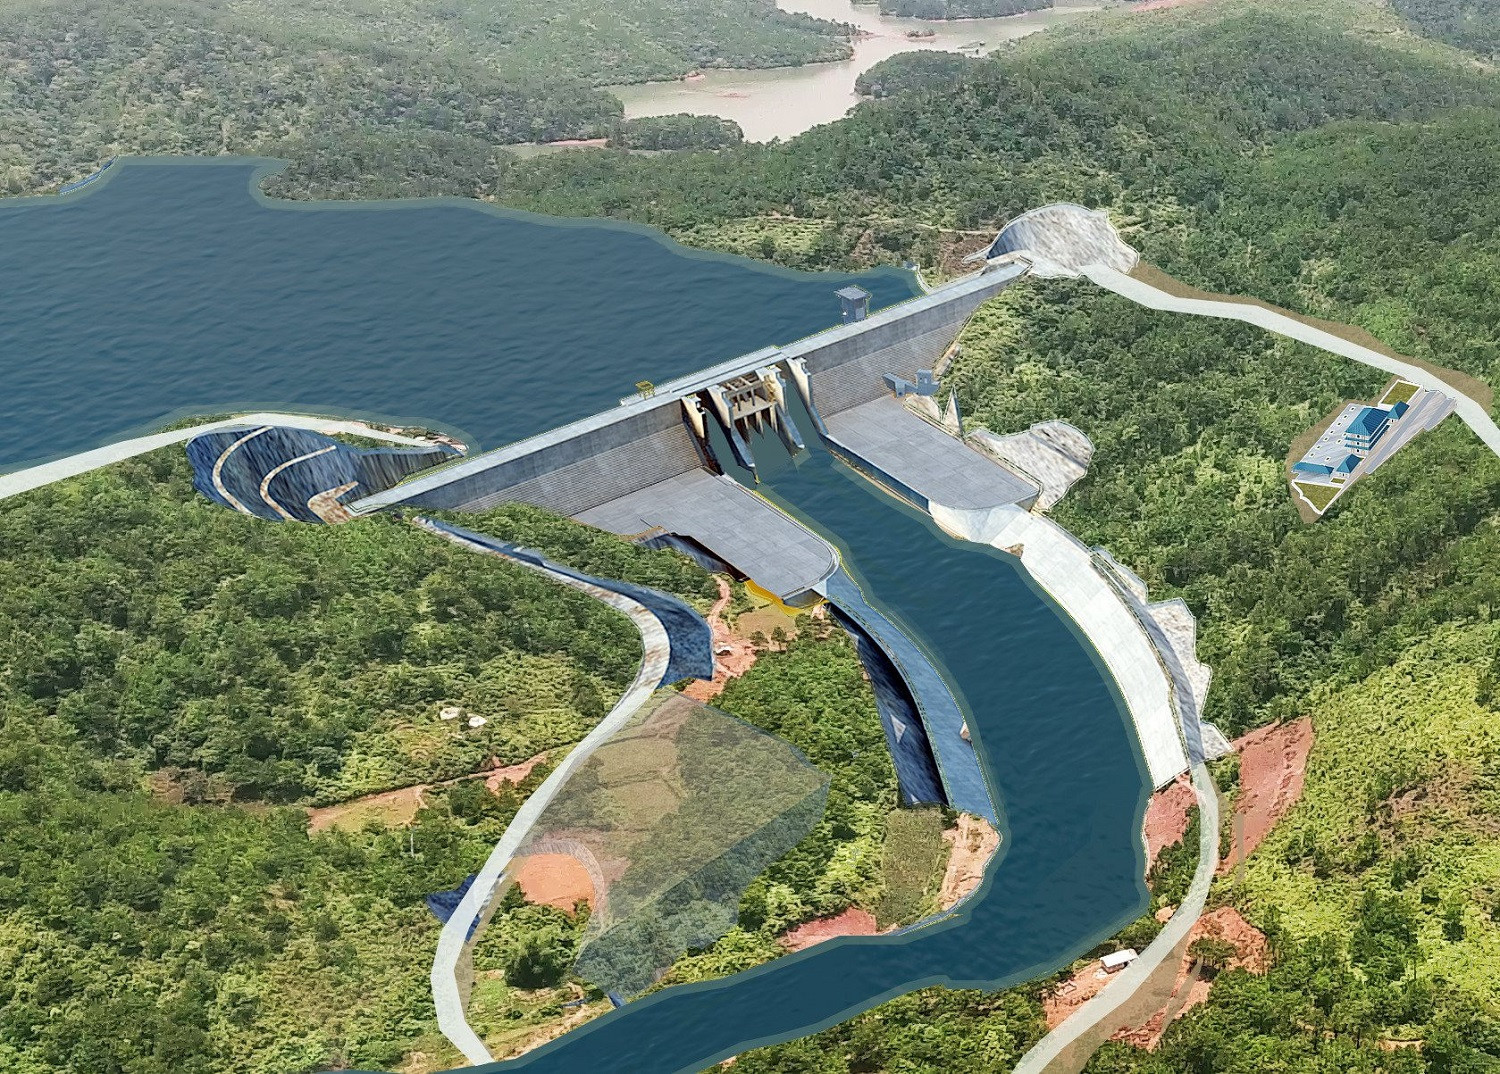 Báo cáo mới nhất của tỉnh Bình Thuận về dự án hồ chứa nước Ka Pét: Chấm dứt hợp đồng với đơn vị lập ĐTM- Ảnh 3.